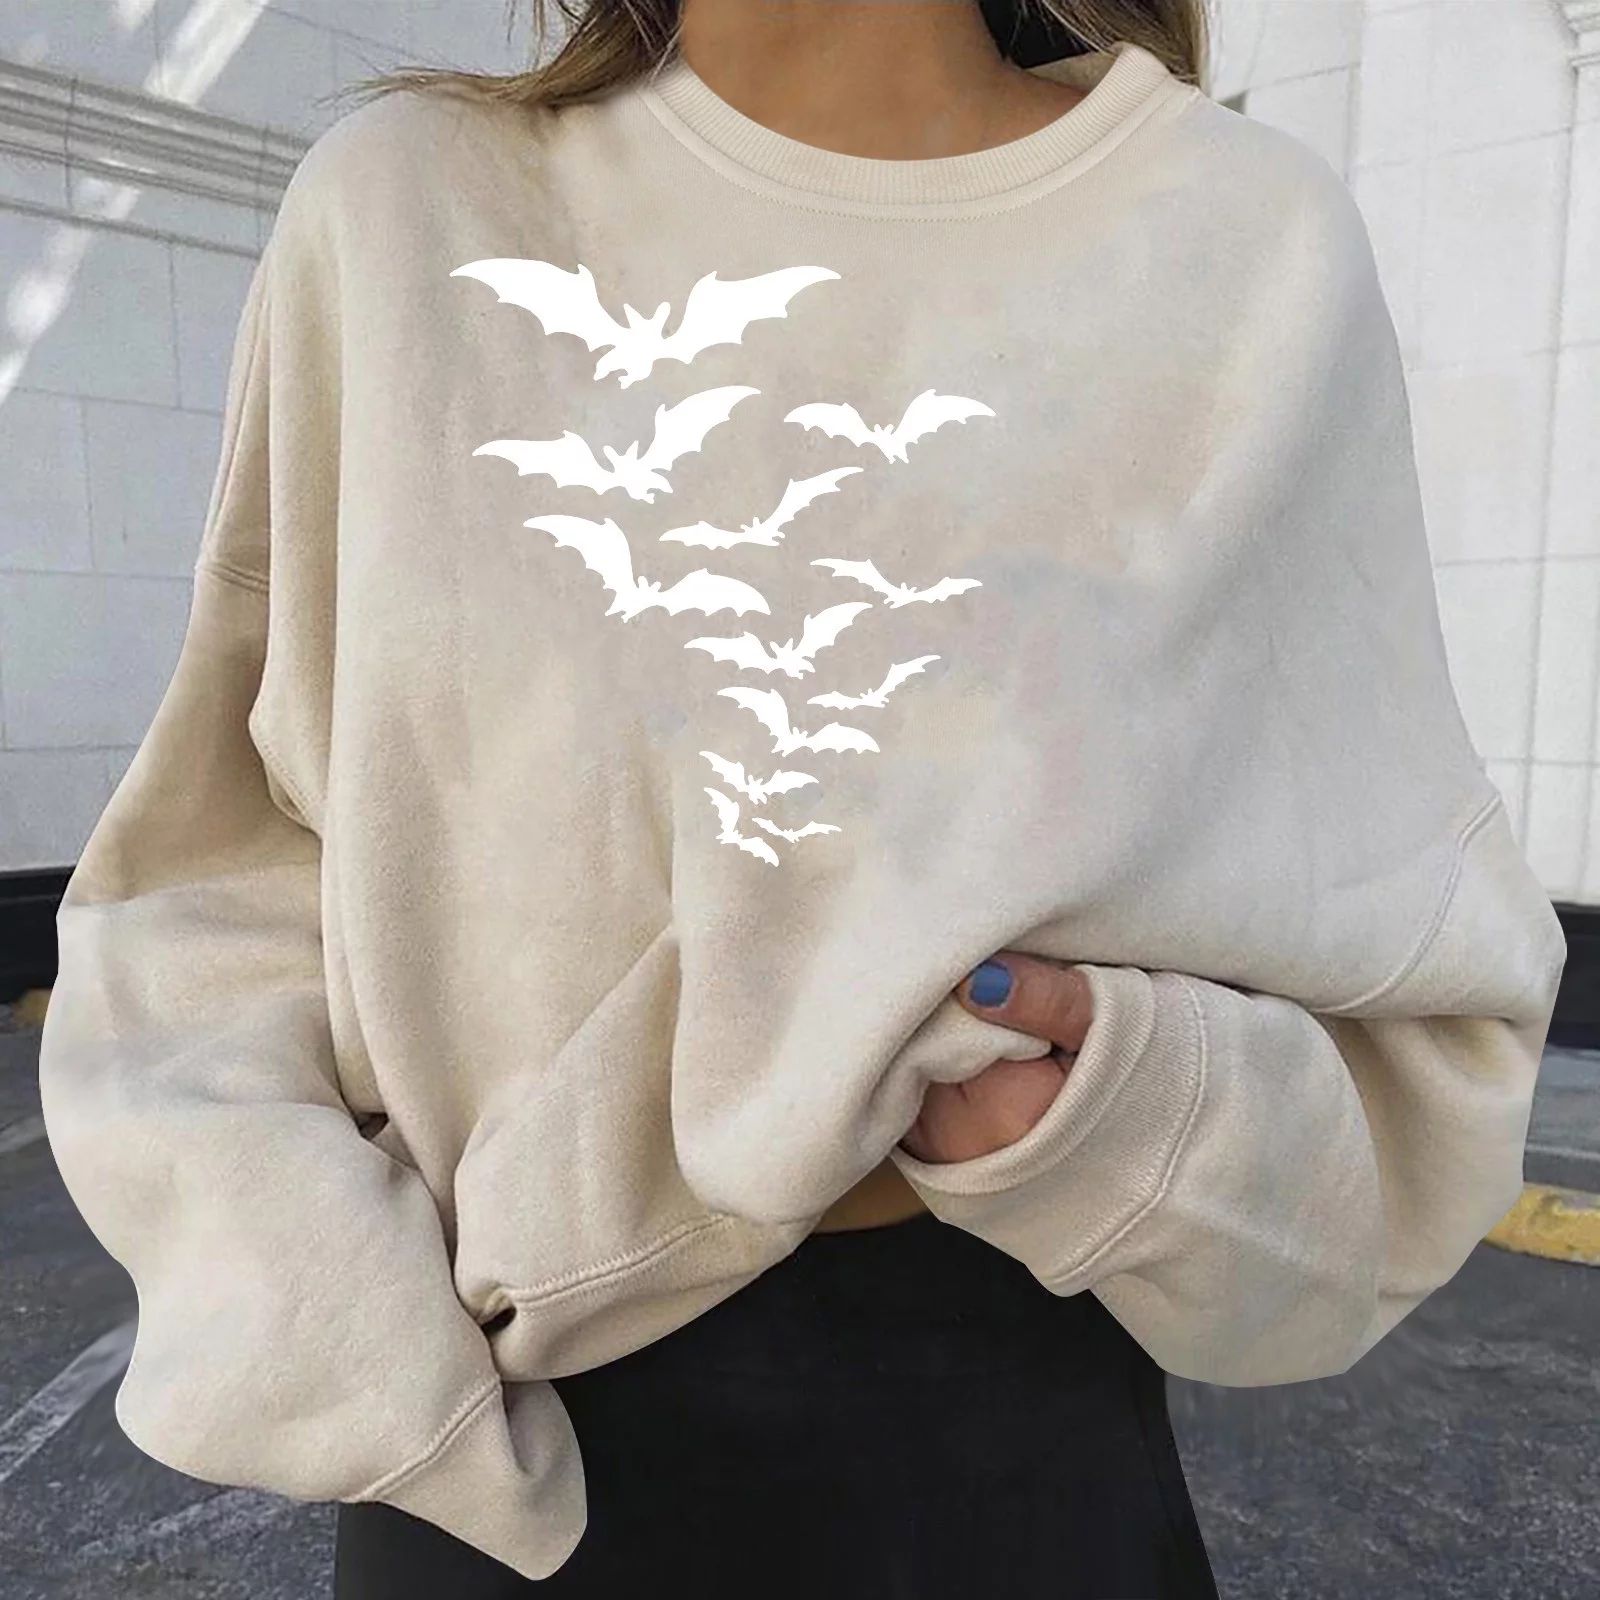 Fesfesfes Clearance Halloween Sweatshirt for Women's Casual Long Sleeve Printed Ladies Sweatshirt... | Walmart (US)